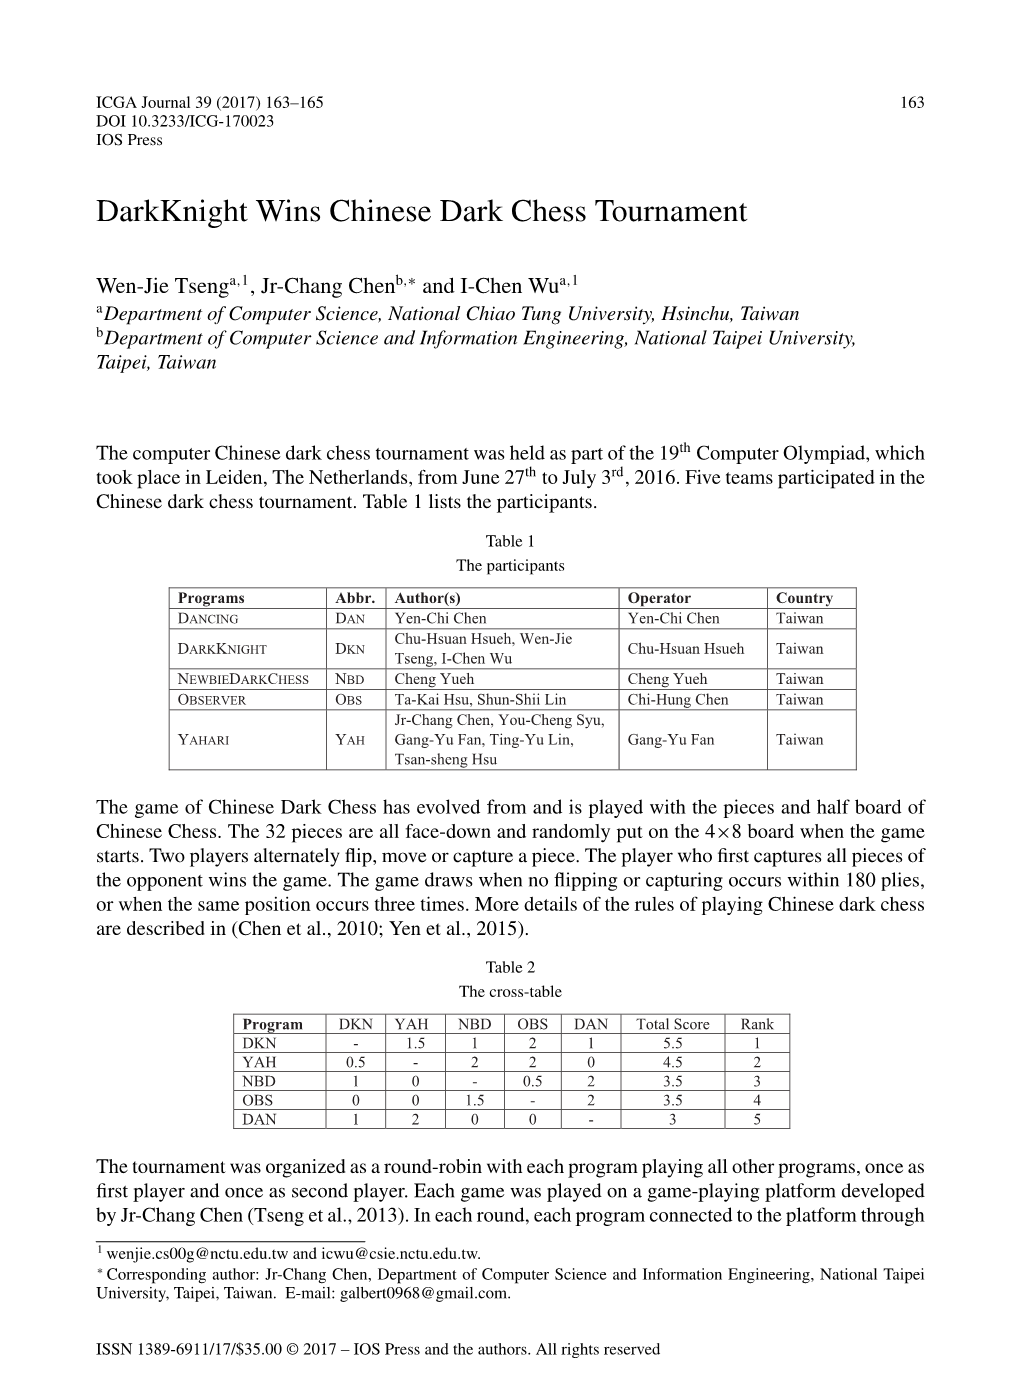 Darkknight Wins Chinese Dark Chess Tournament